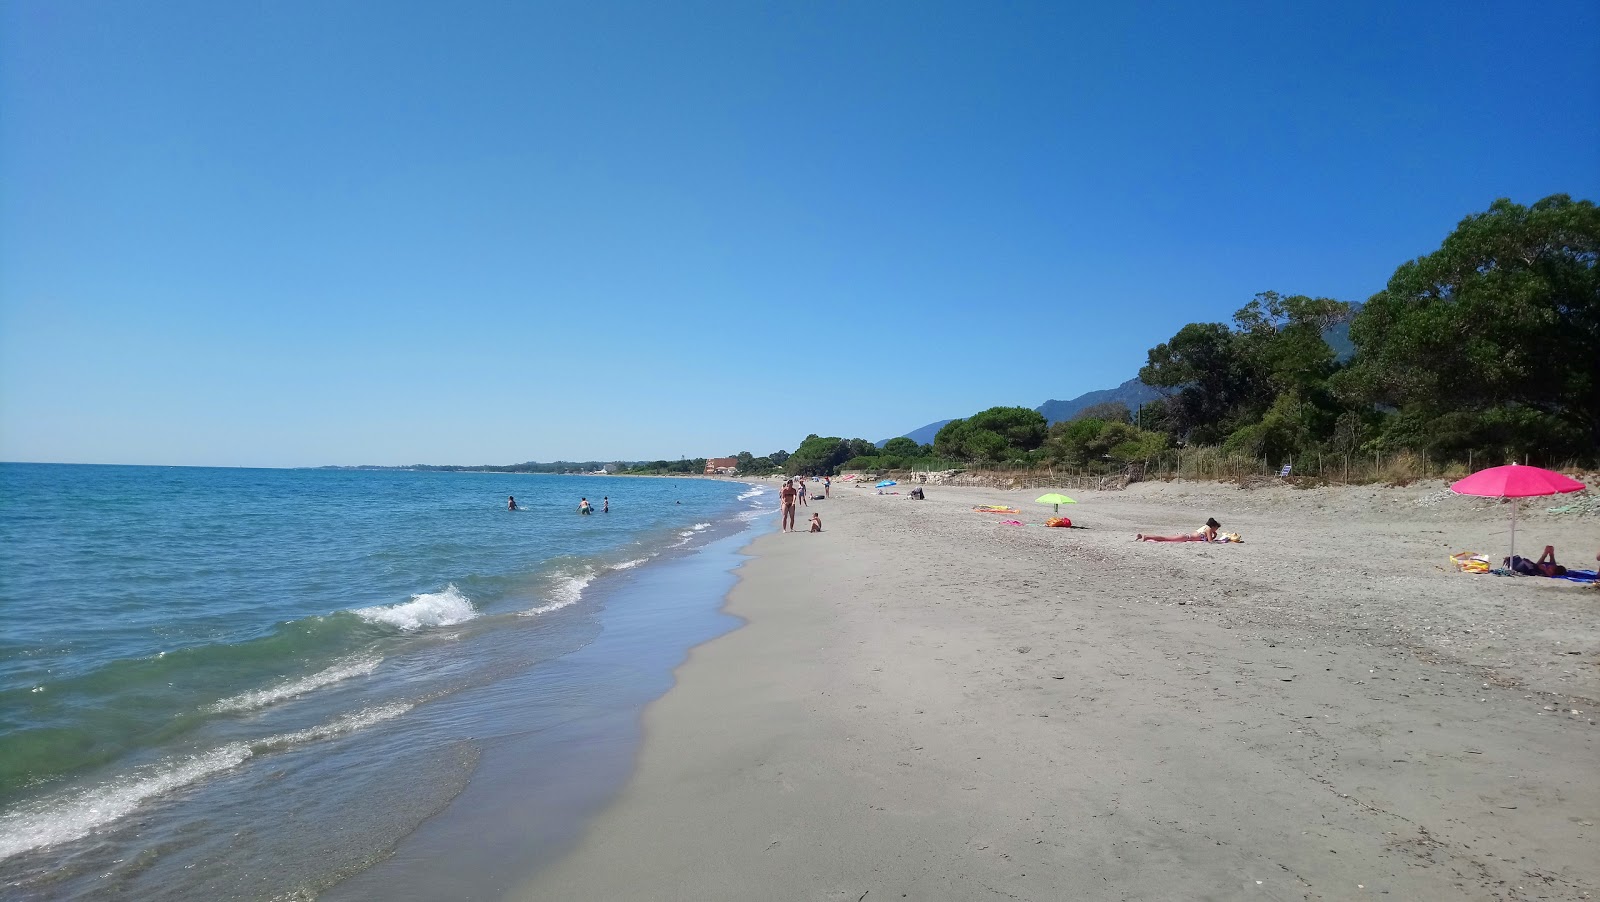 Ponticchio beach'in fotoğrafı parlak kum yüzey ile